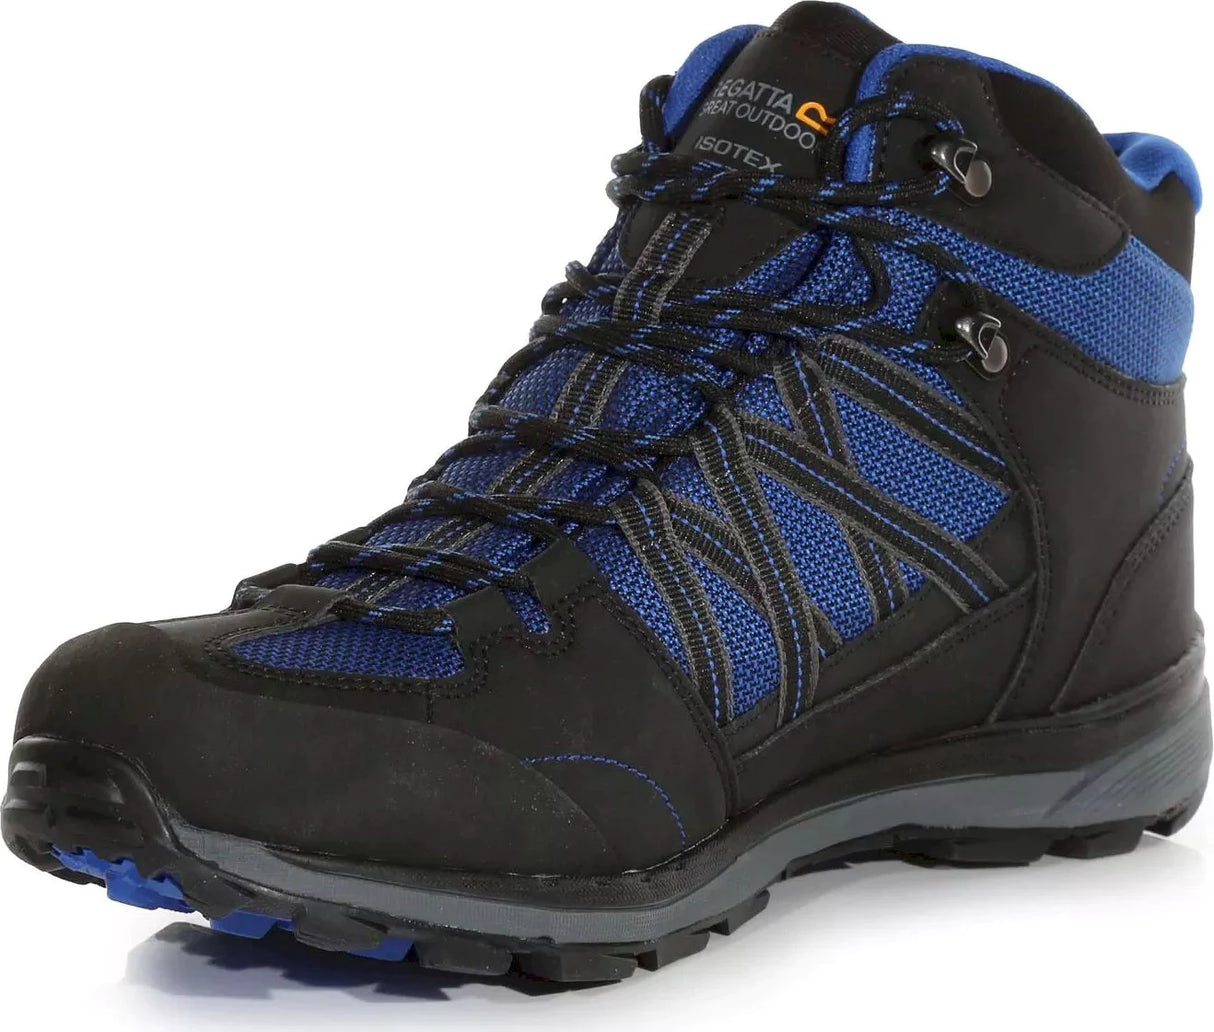 Regatta Samaris II Mid Mens Waterproof Walking Hiking Boots - Blue/Black